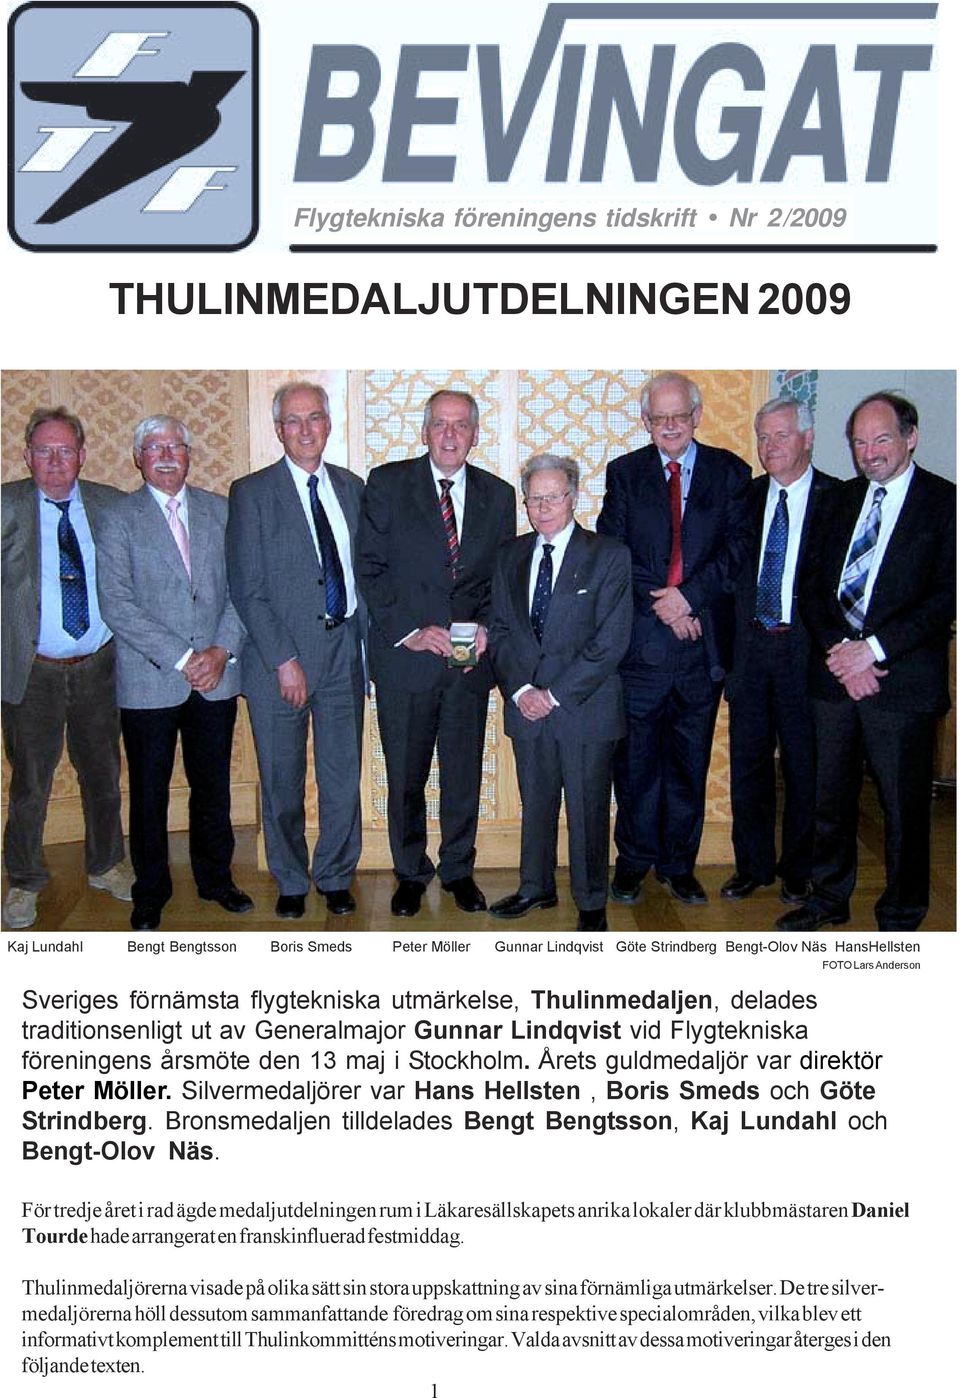 Årets guldmedaljör var direktör Peter Möller. Silvermedaljörer var Hans Hellsten, Boris Smeds och Göte Strindberg. Bronsmedaljen tilldelades Bengt Bengtsson, Kaj Lundahl och Bengt-Olov Näs.